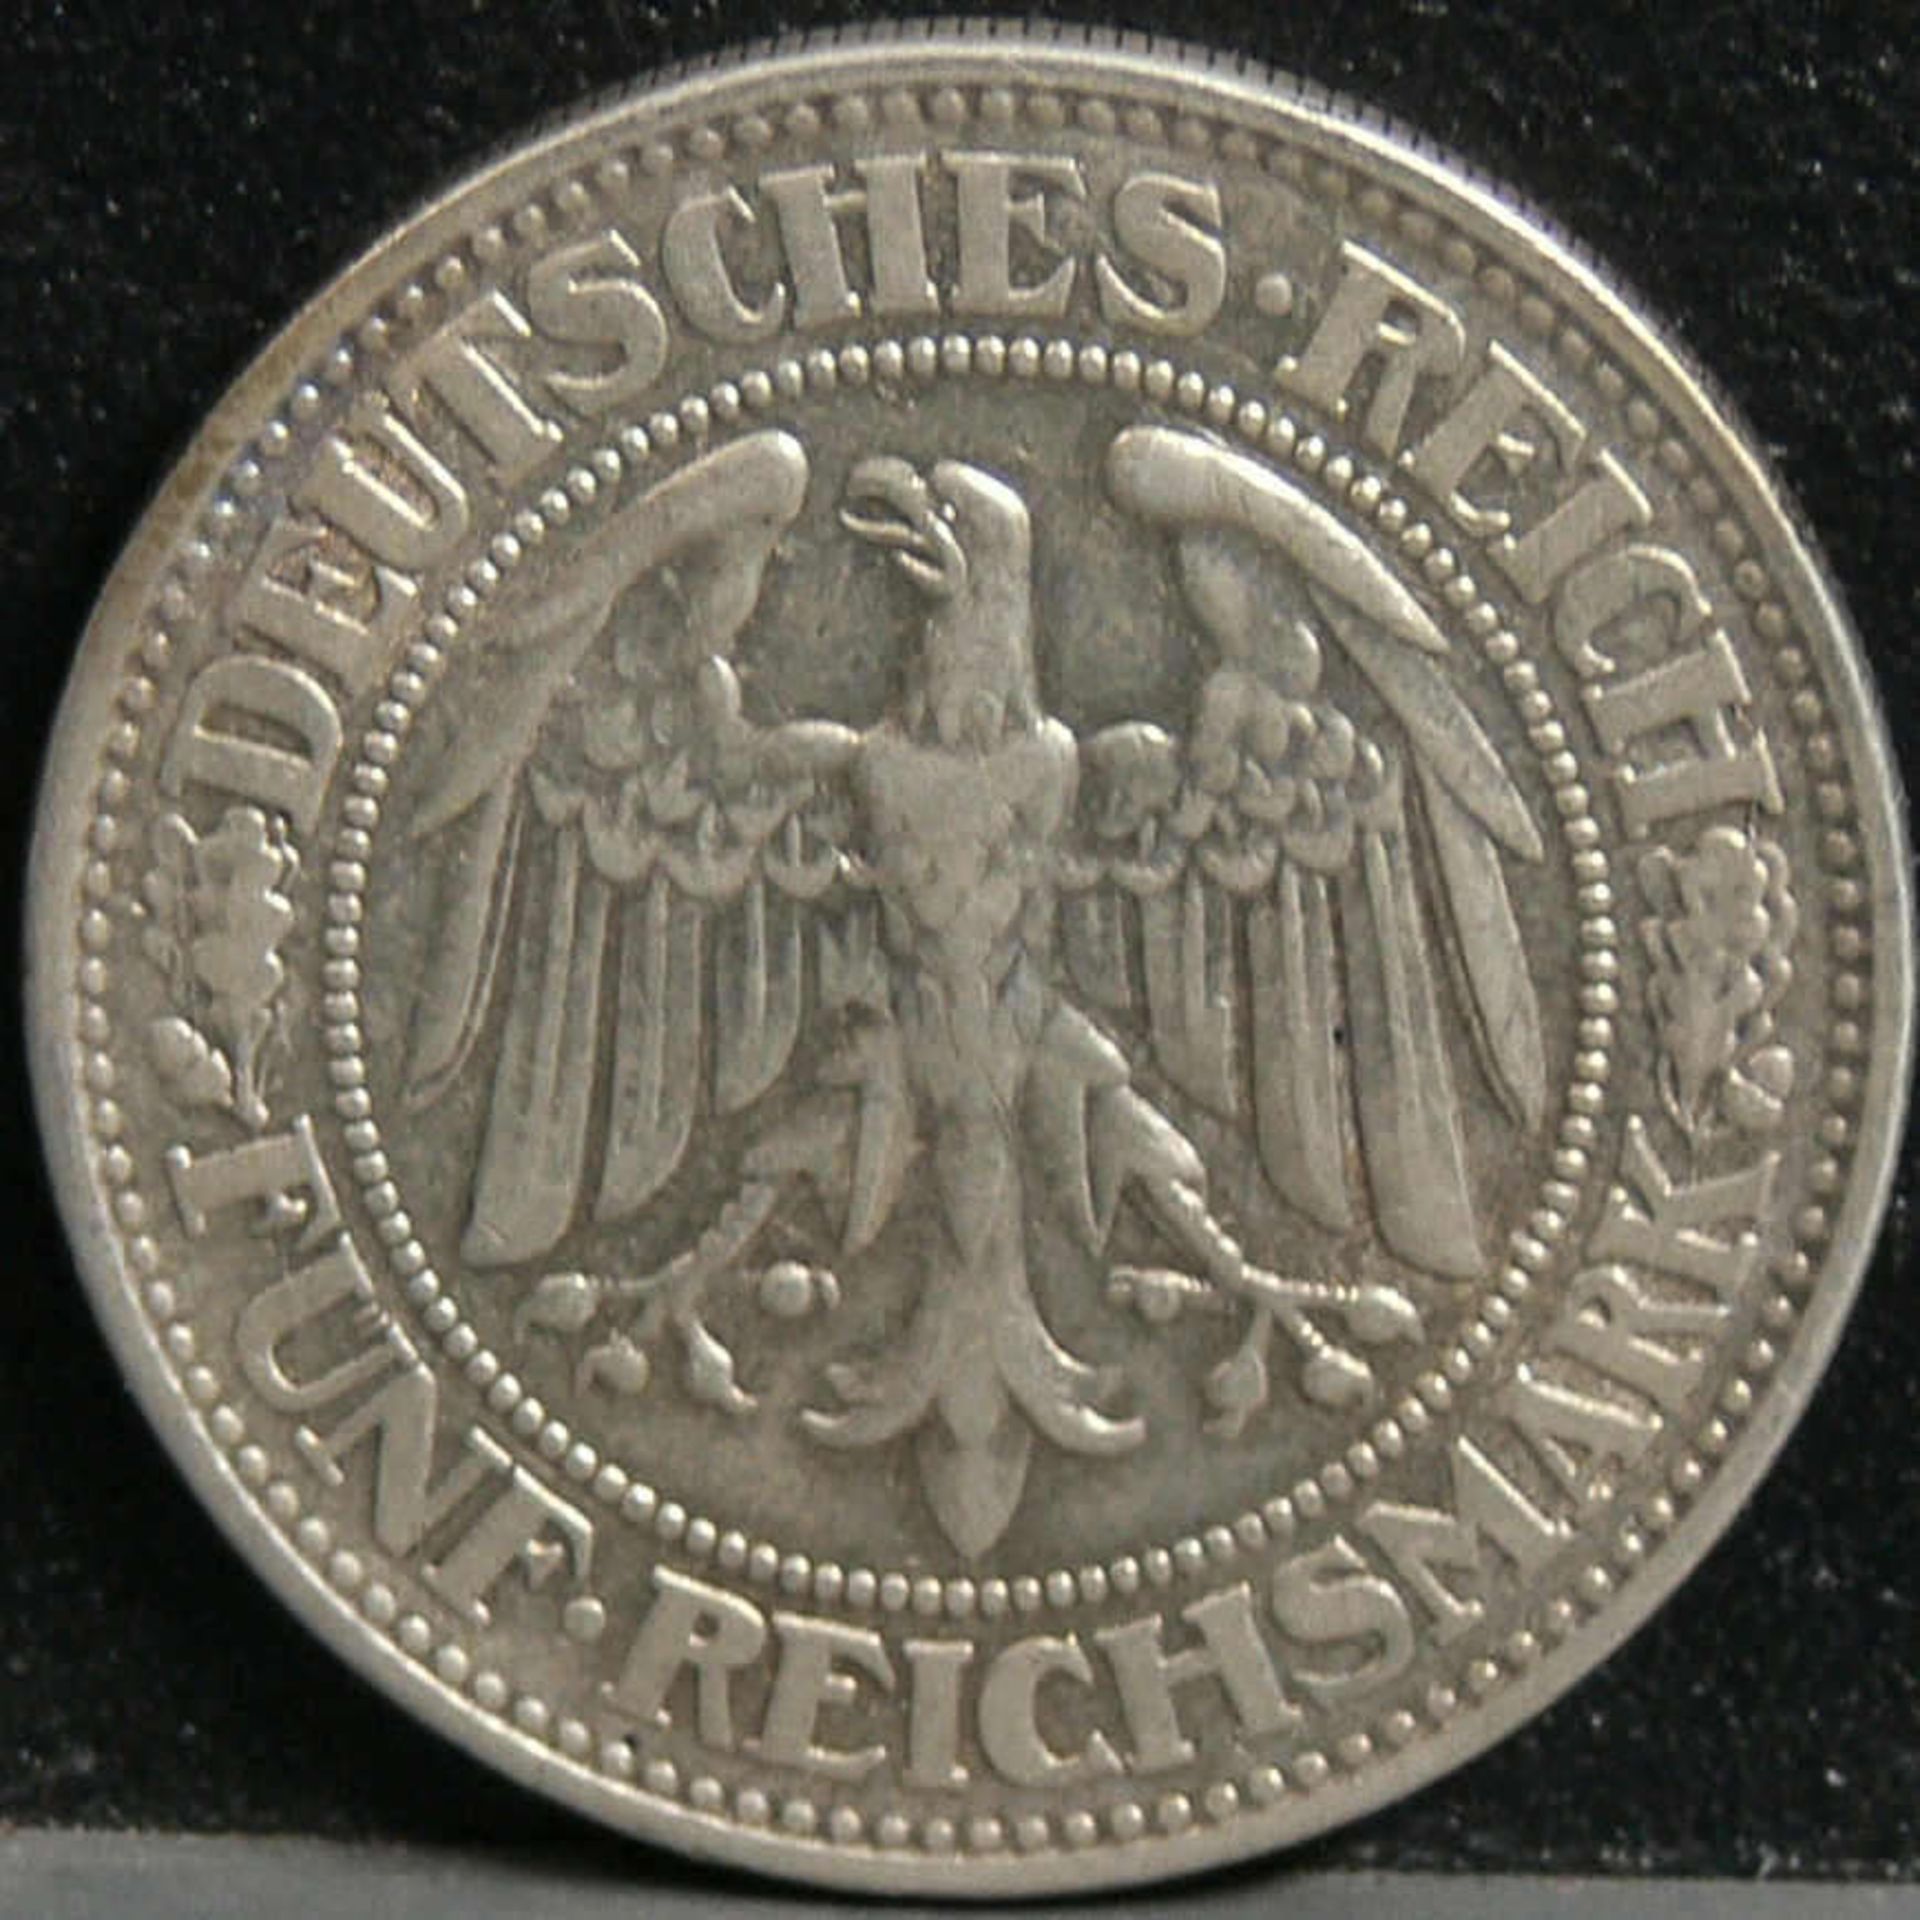 Deutsches Reich 1927 D, fünf Reichsmark - Silbermünze "Eichbaum". Gewicht: 25 g, Durchmesser: 36 mm. - Image 2 of 2